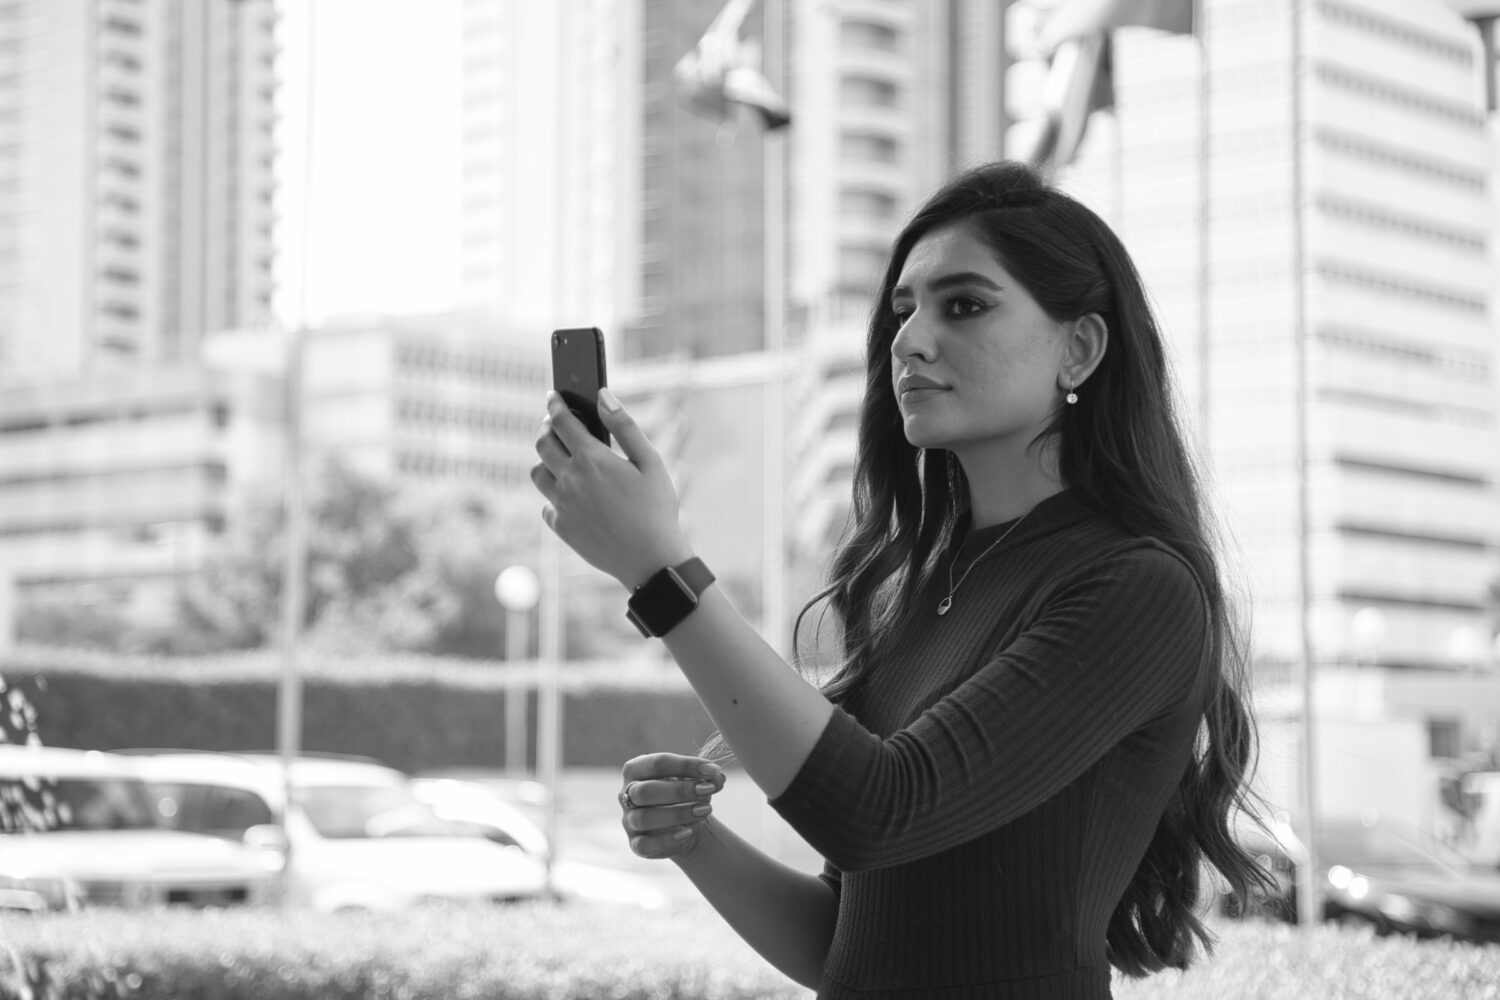 mulher segurando um celular olhando para tela, ela tem traços árabes e a foto está em preto e branco, há prédios atrás e o que parece ser uma via movimentada, para ilustrar o post de chip celular Bahrein